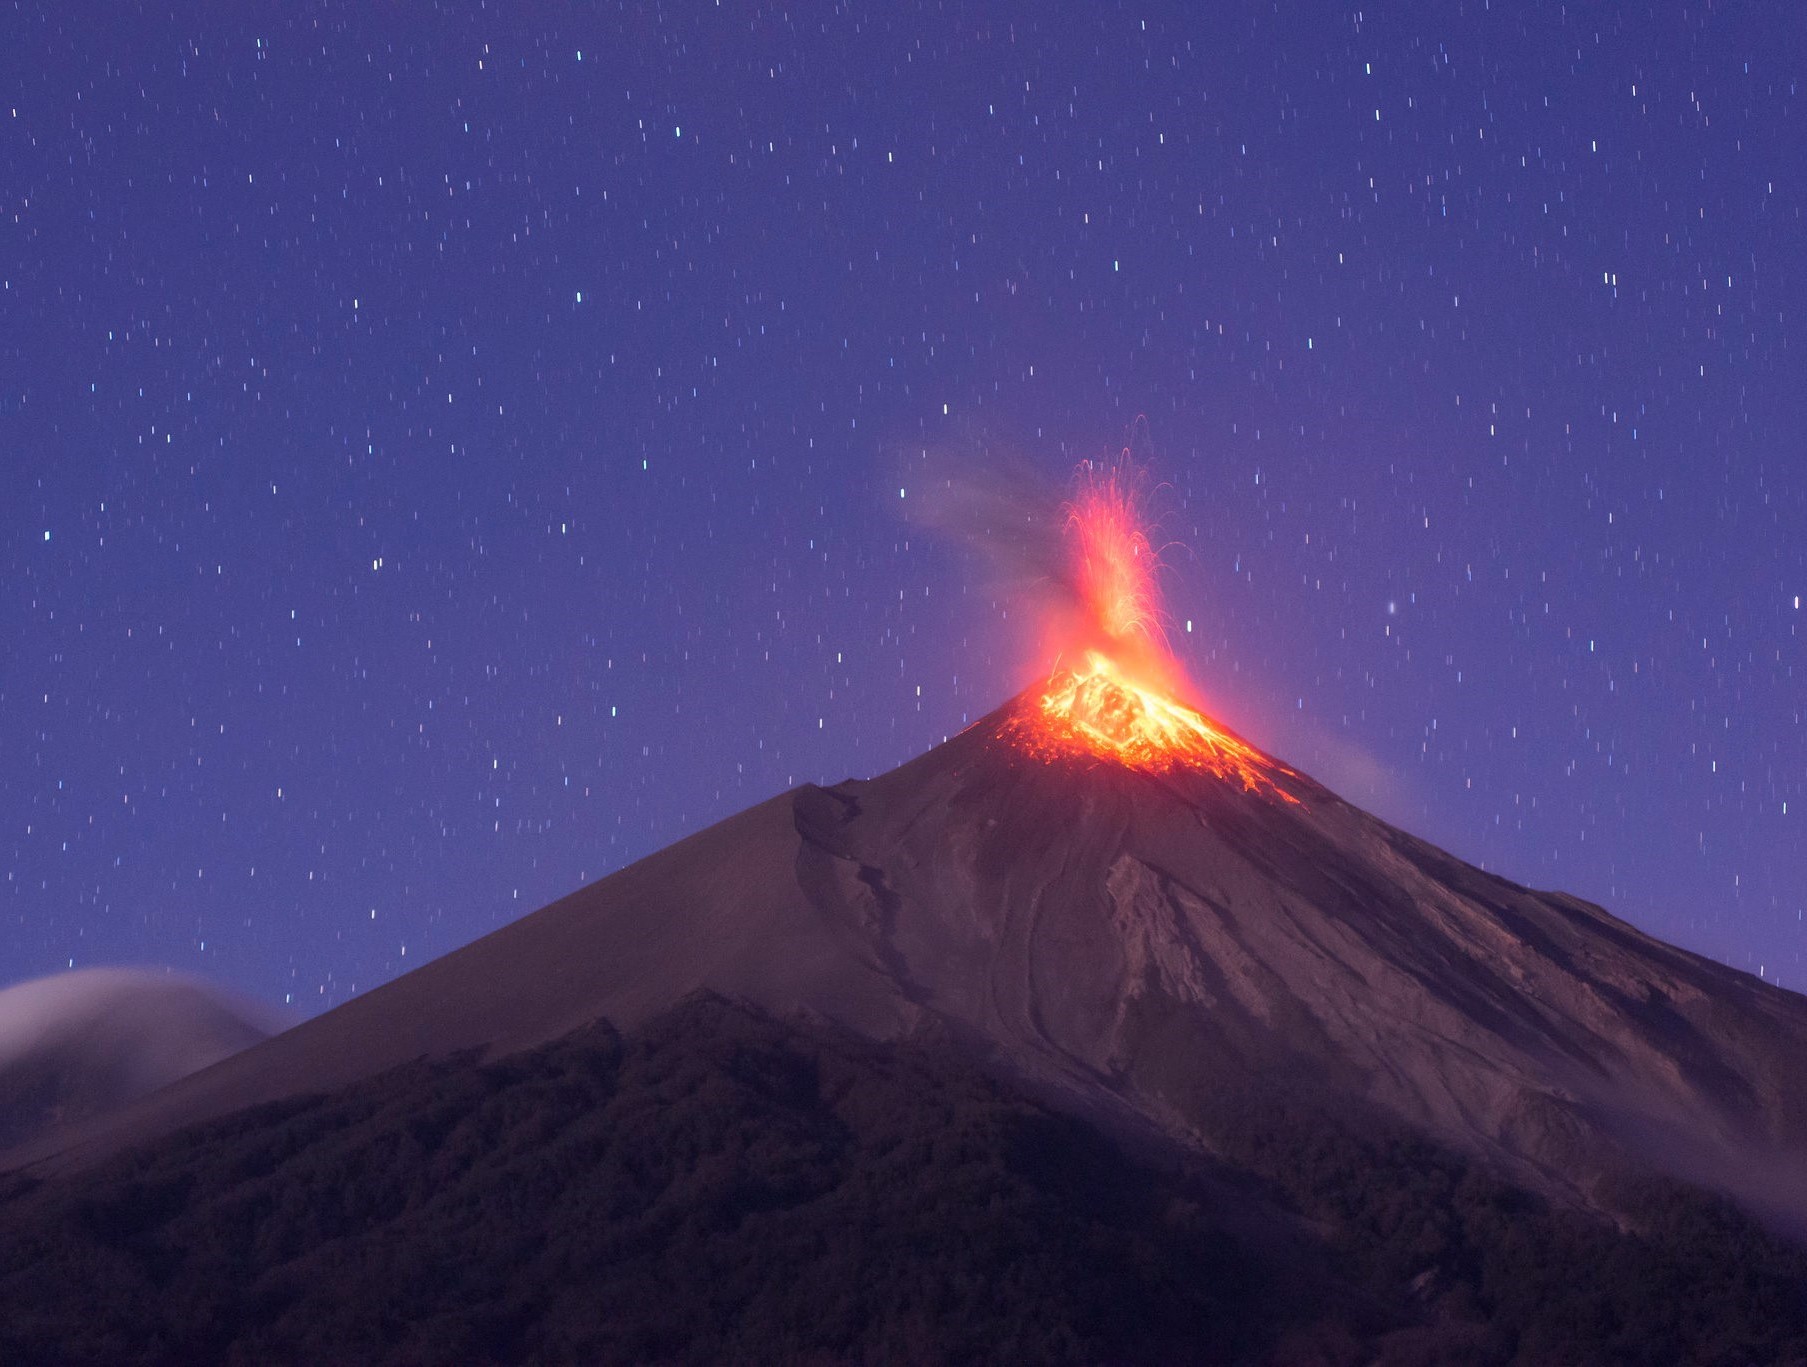 Imagen 2. Volcán en erupción. Tomado de Mauricio Leonel Elgueta en Flickr.